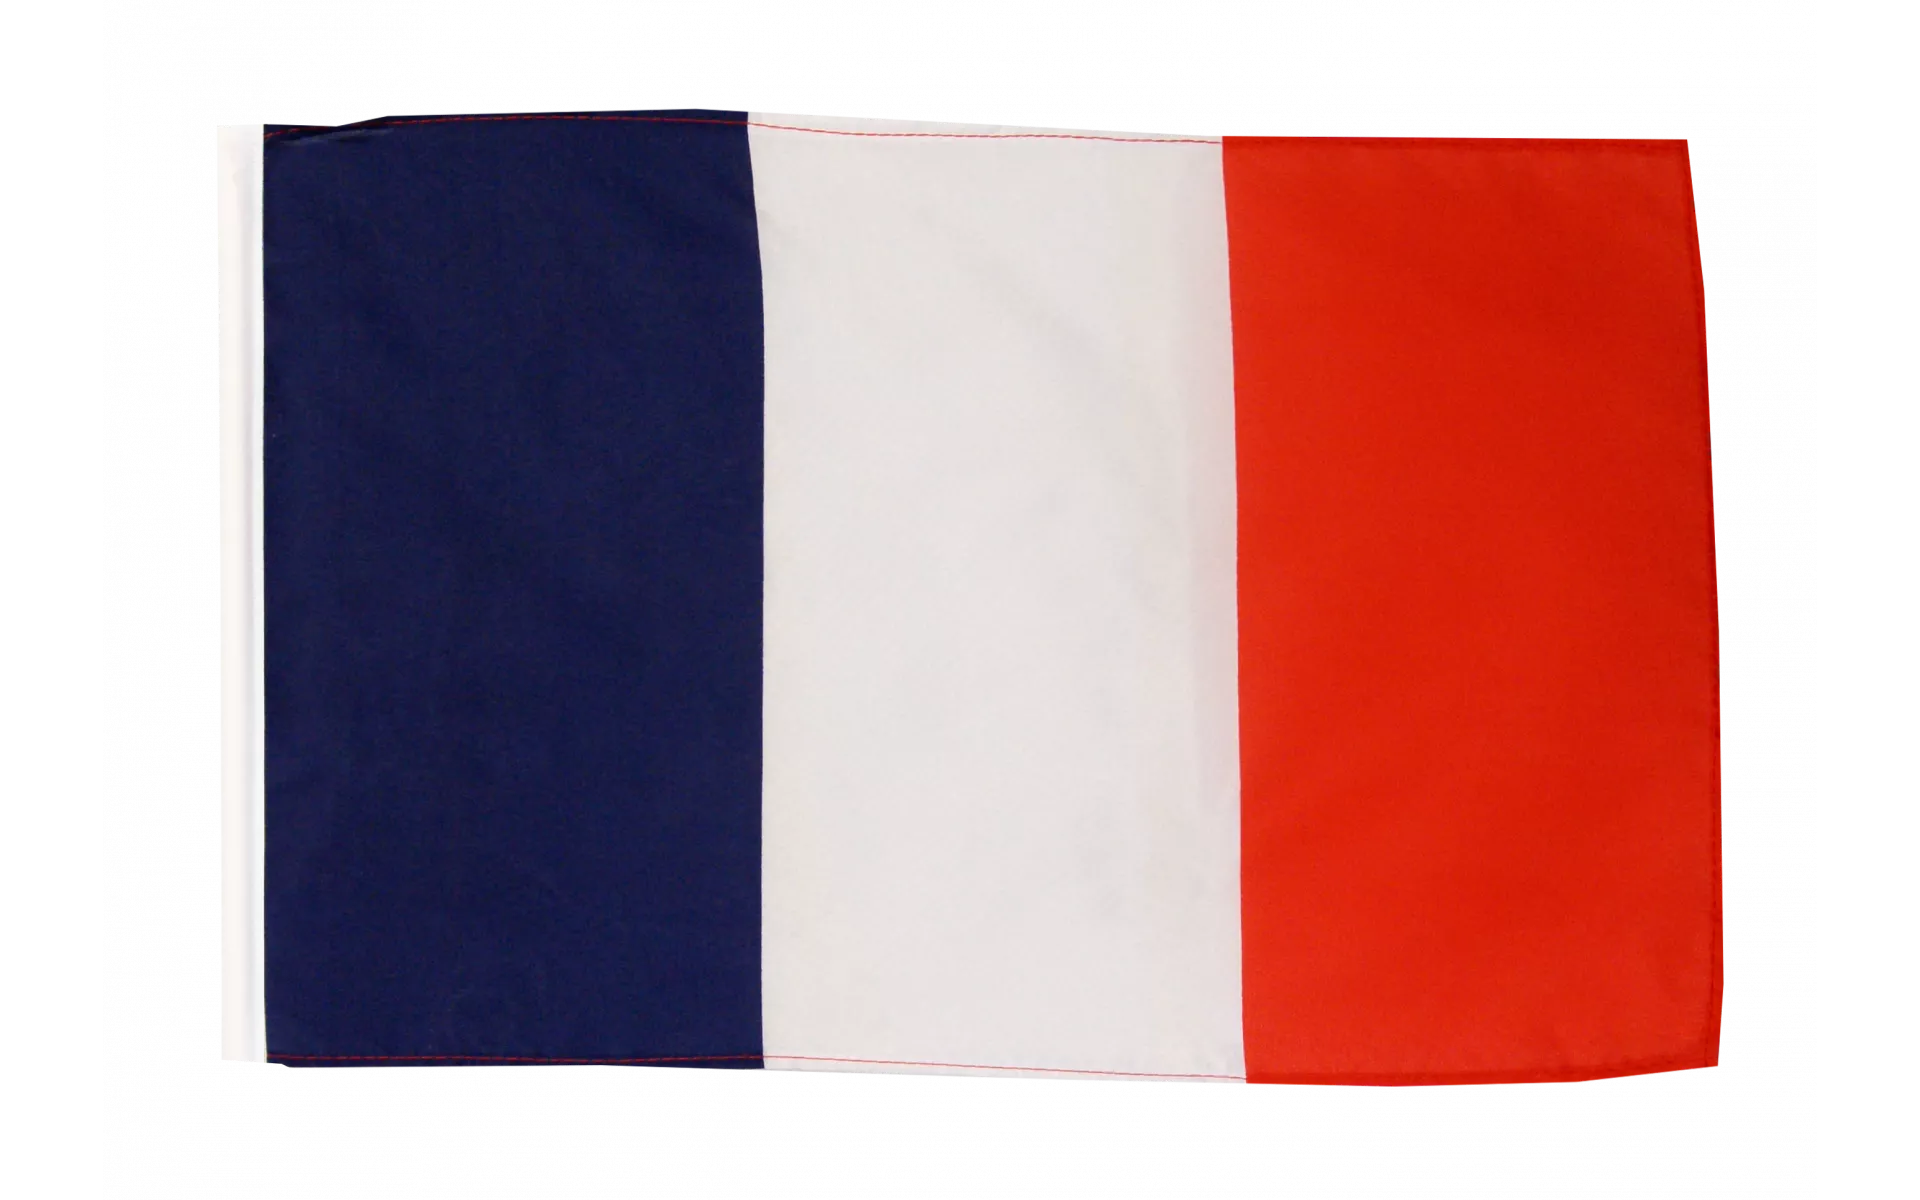 Flagge Stoff Frankreich 30 x 45cm, an Holzstab 60cm, sFr. 2,40